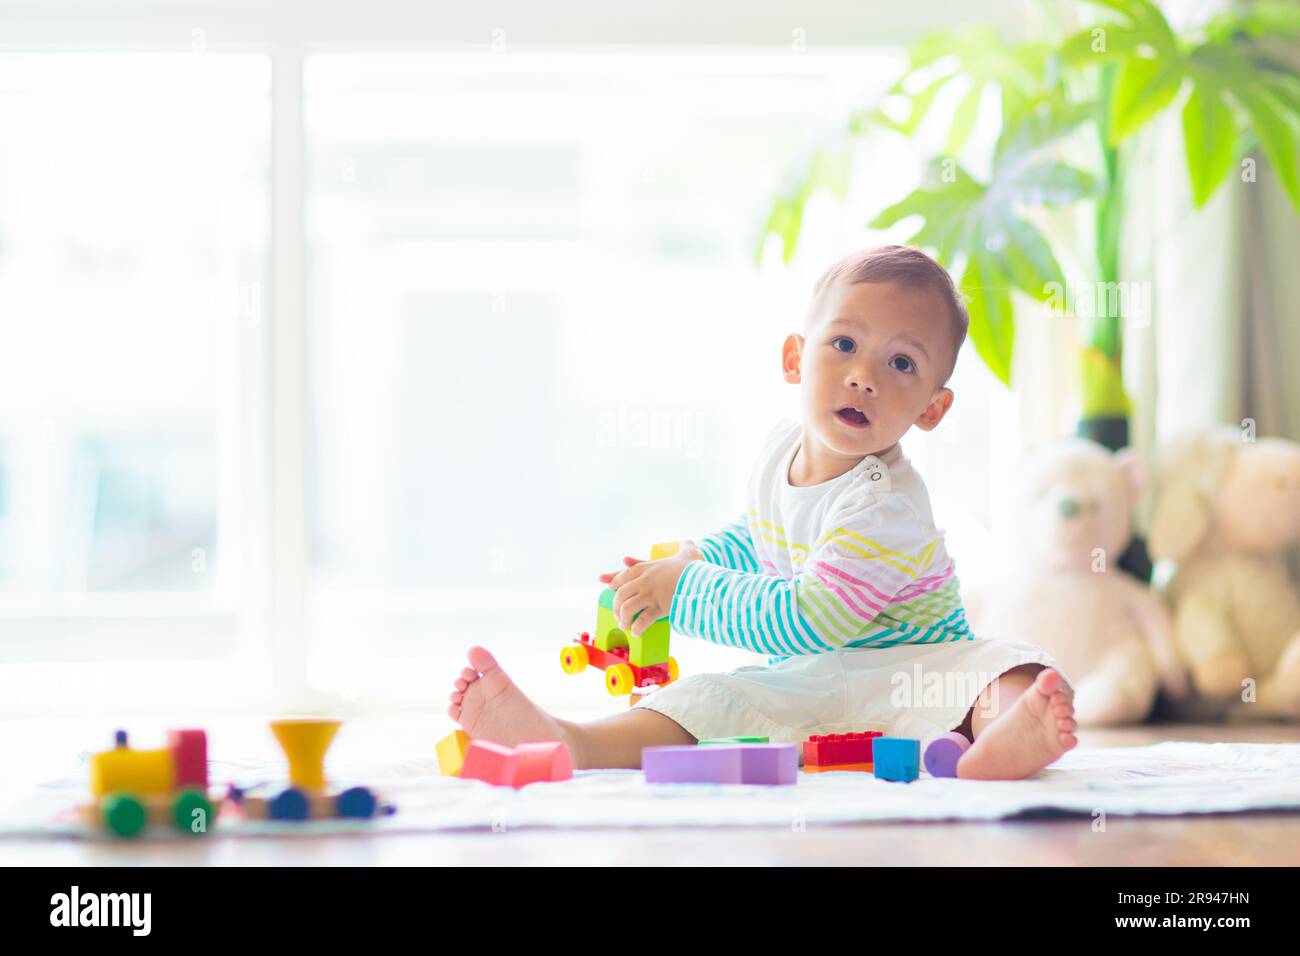 Adorable bébé asiatique apprenant à ramper et à jouer avec le jouet coloré de bloc dans la chambre blanche ensoleillée. Mignon rire enfant rampant sur un tapis de jeu. Banque D'Images